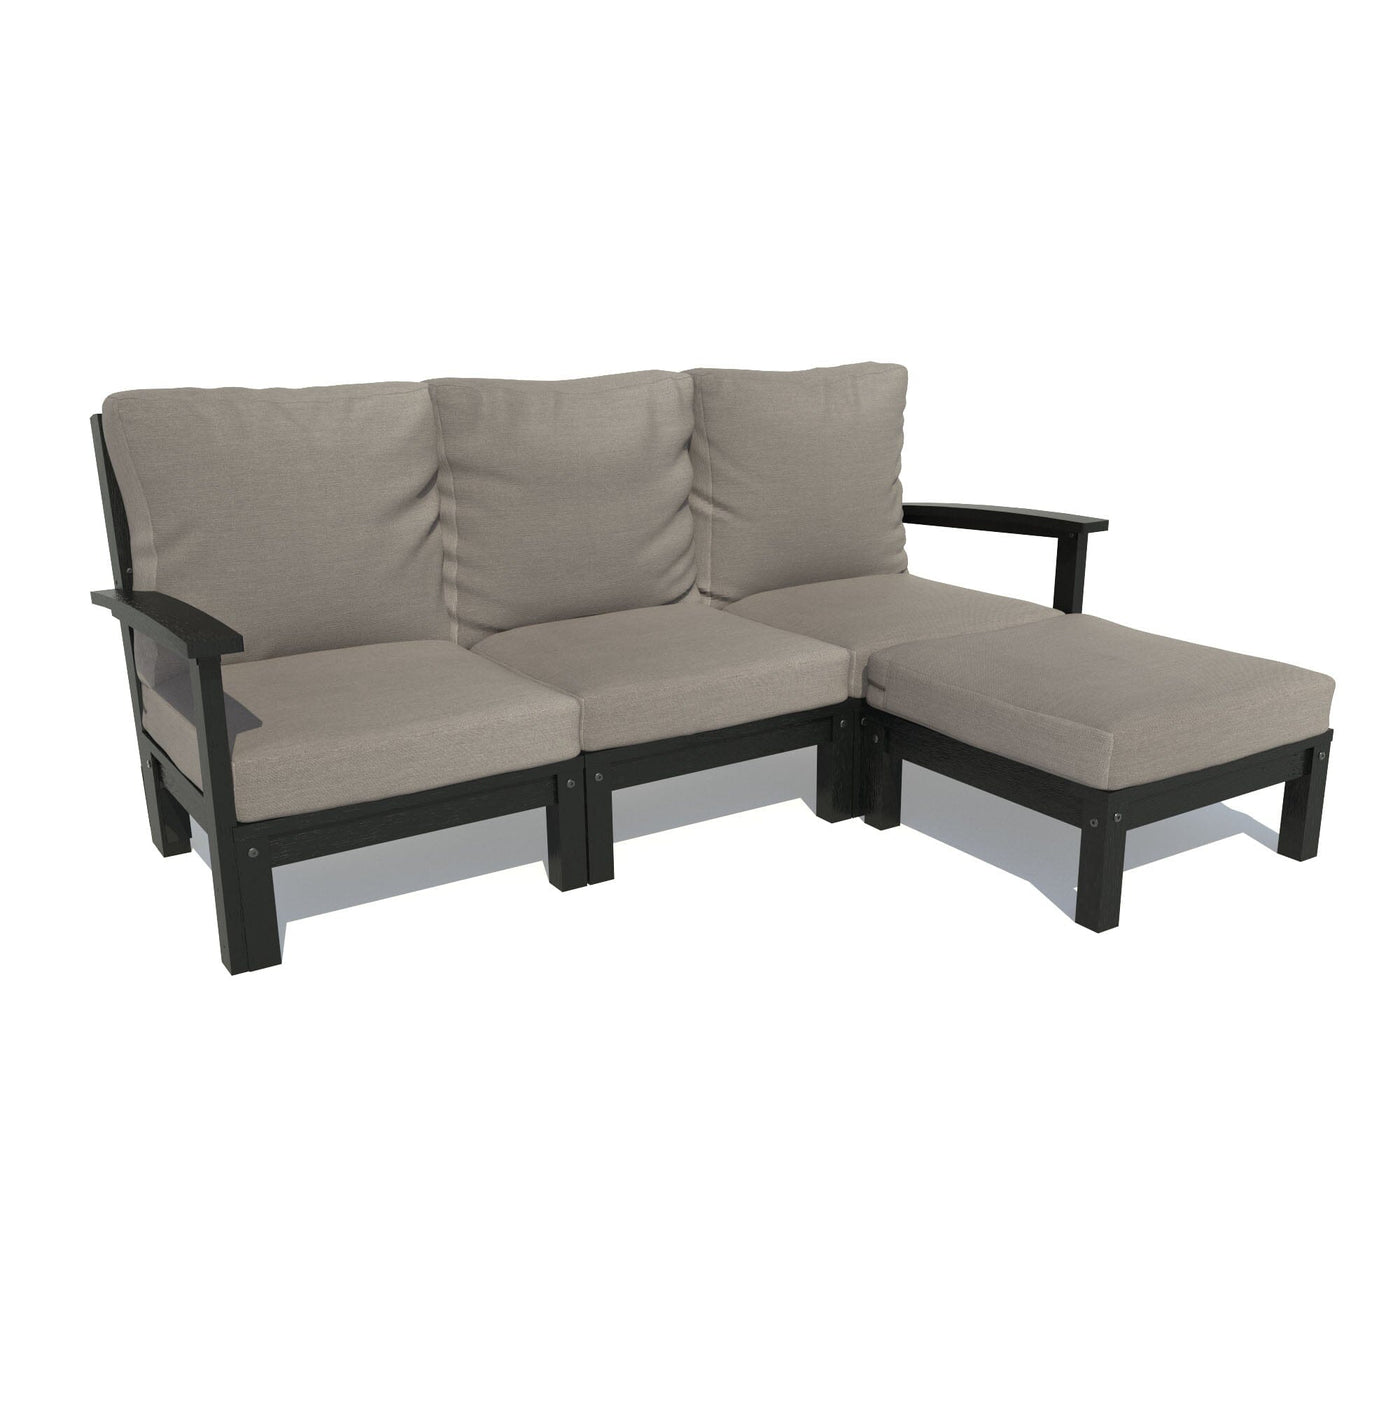 Bespoke Deep Seating: Sofa and Ottoman Deep Seating Highwood USA Stone Gray Black 